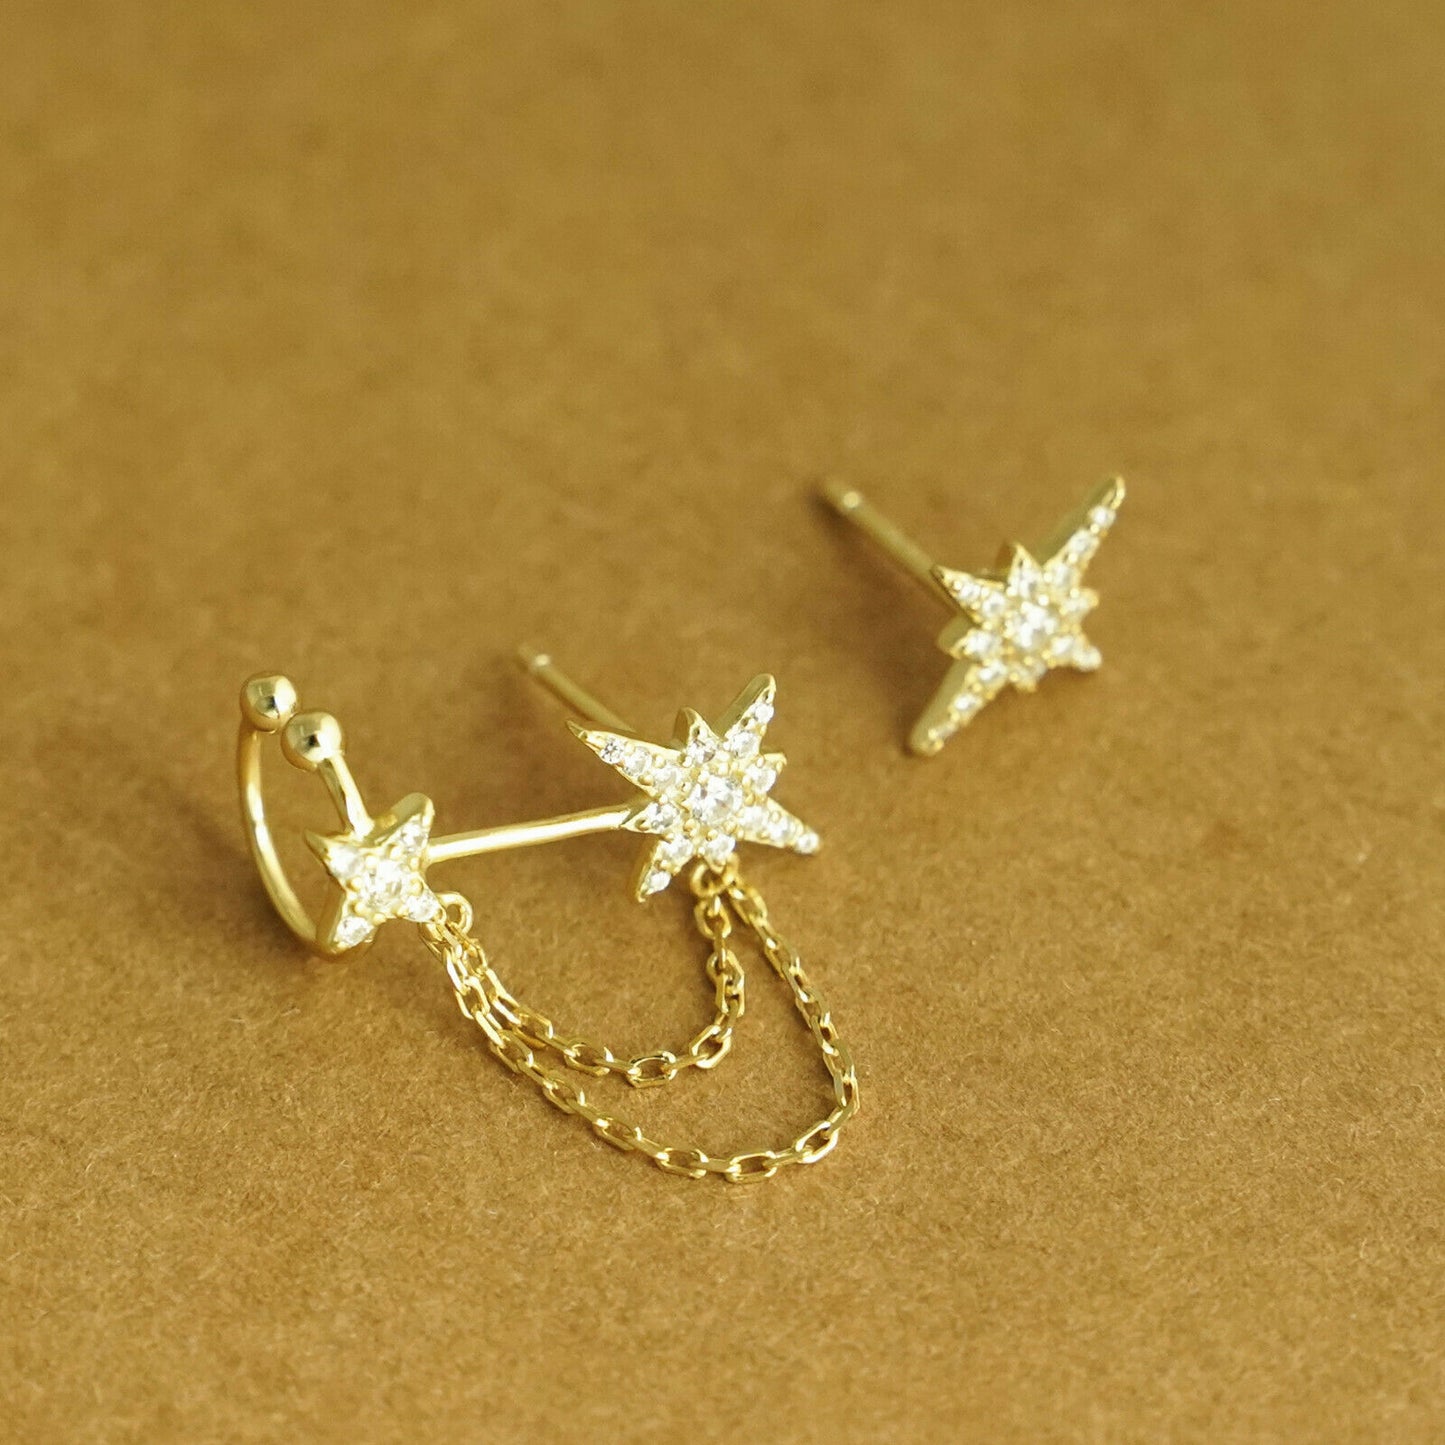 18K Gold on Sterling Silver Paved CZ Pole Star Chain Cuff Asymmetrical Earrings - sugarkittenlondon